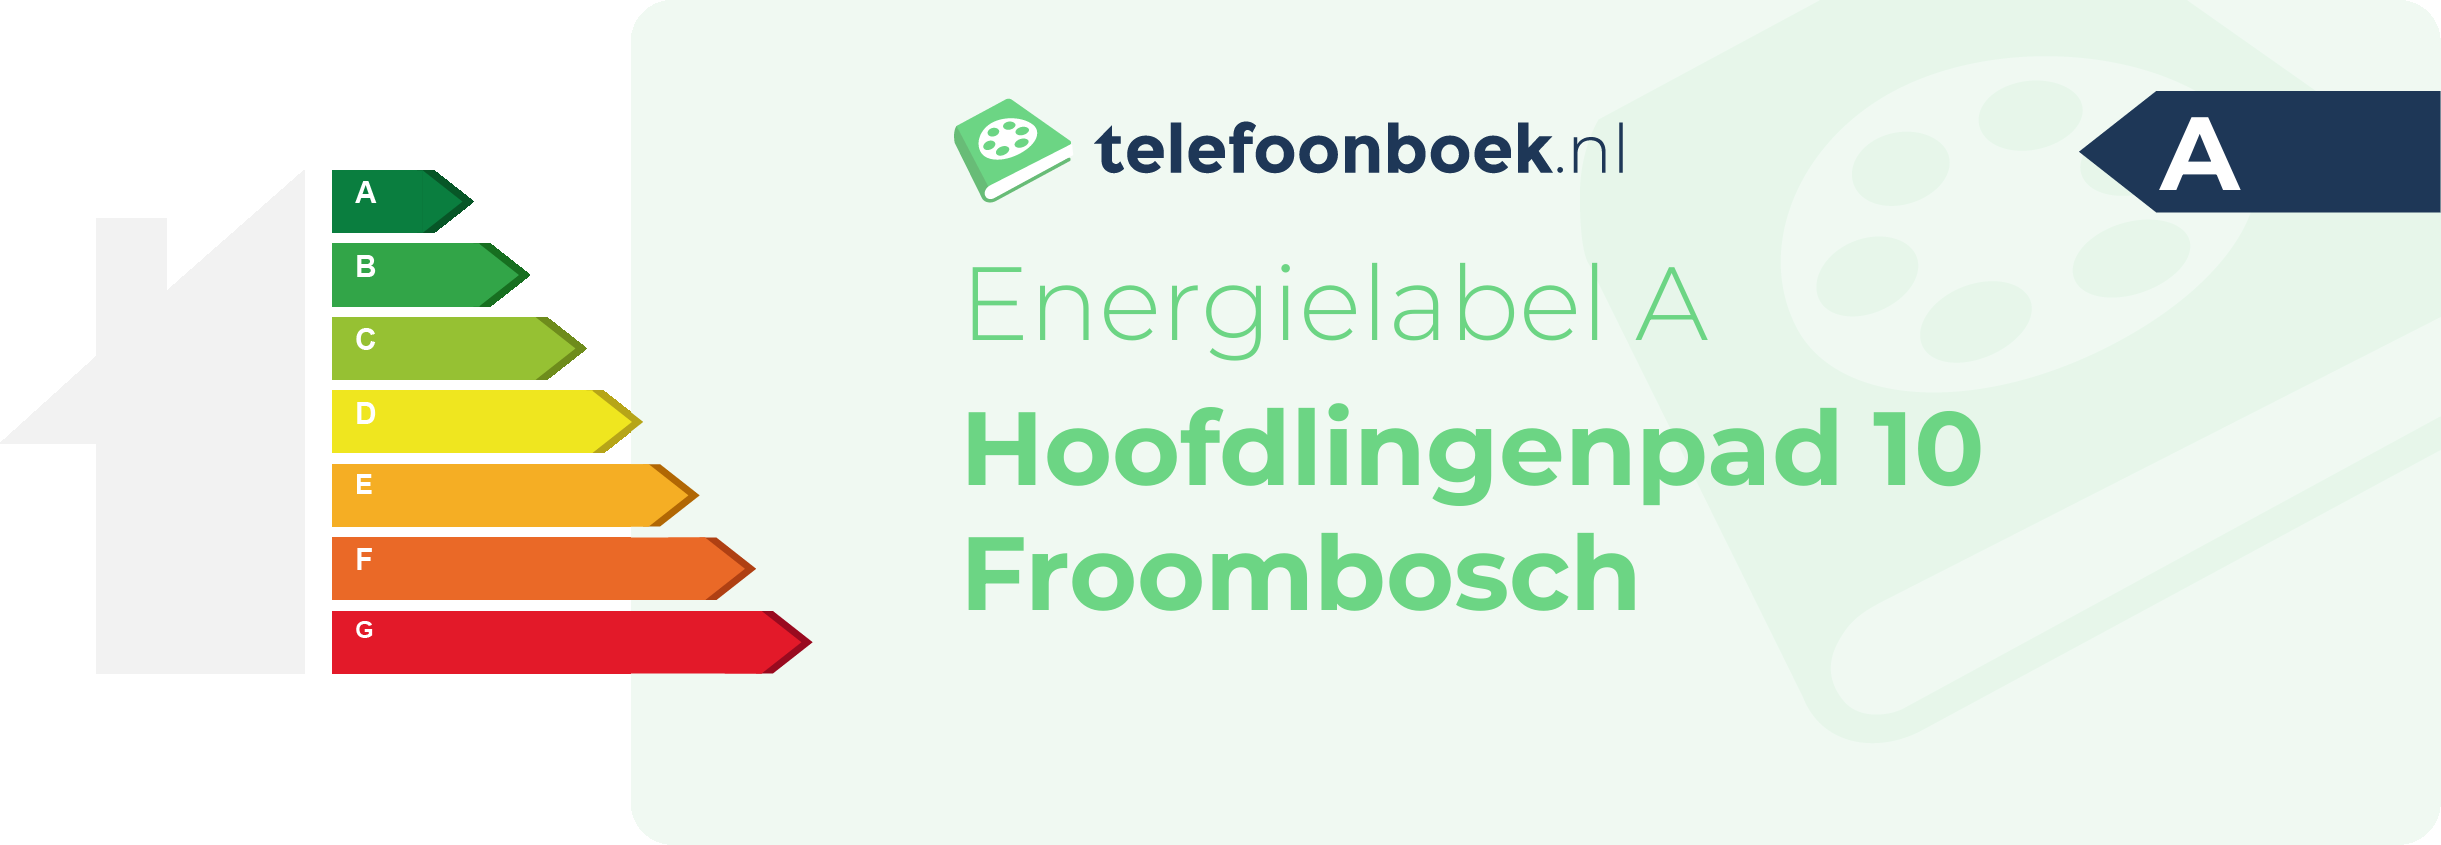 Energielabel Hoofdlingenpad 10 Froombosch